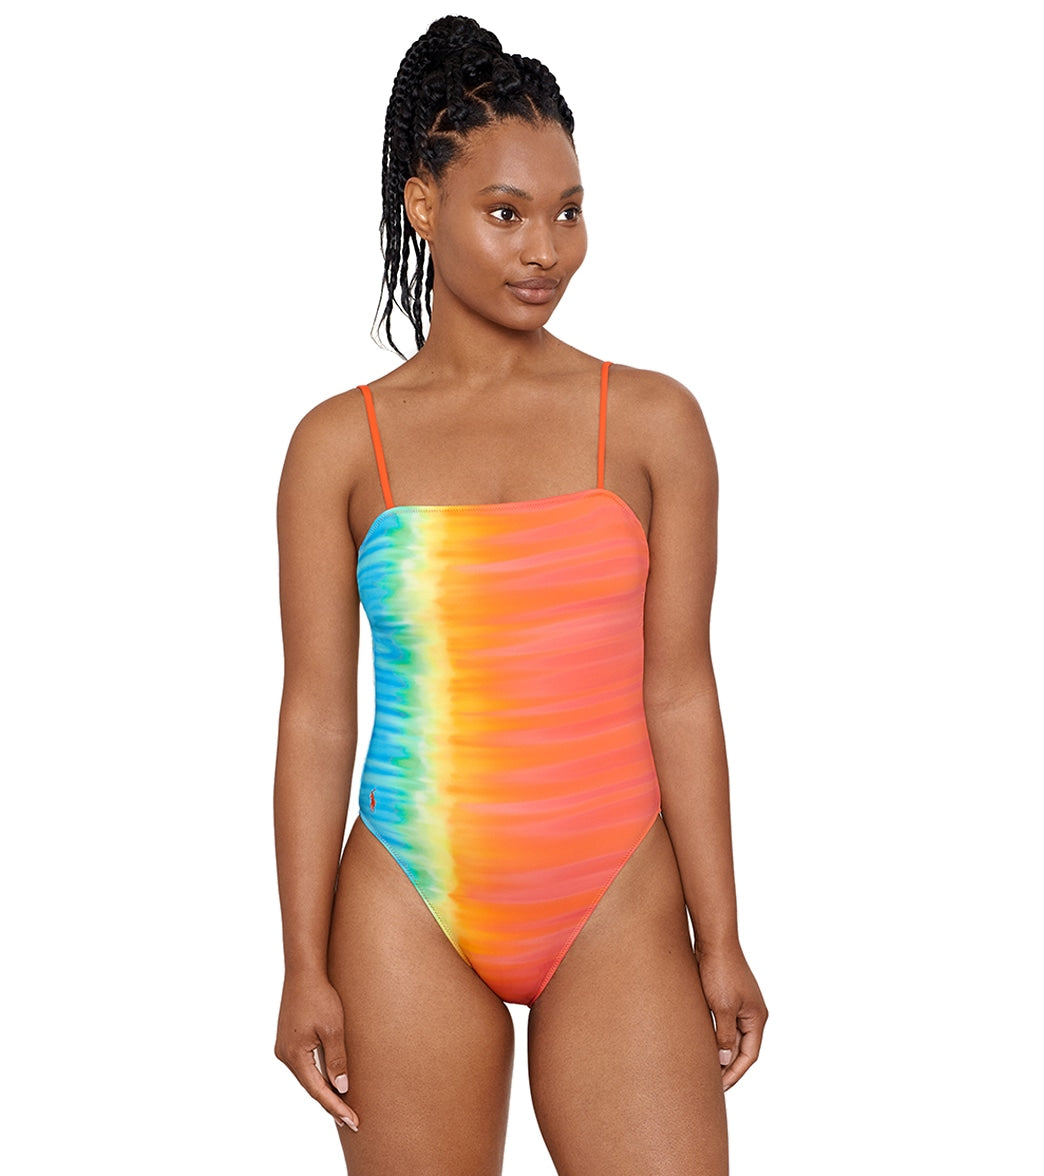 Women's Sexy Glossy Skin-Tight Bodysuit One-Piece Swimsuit Leotard Swimwear